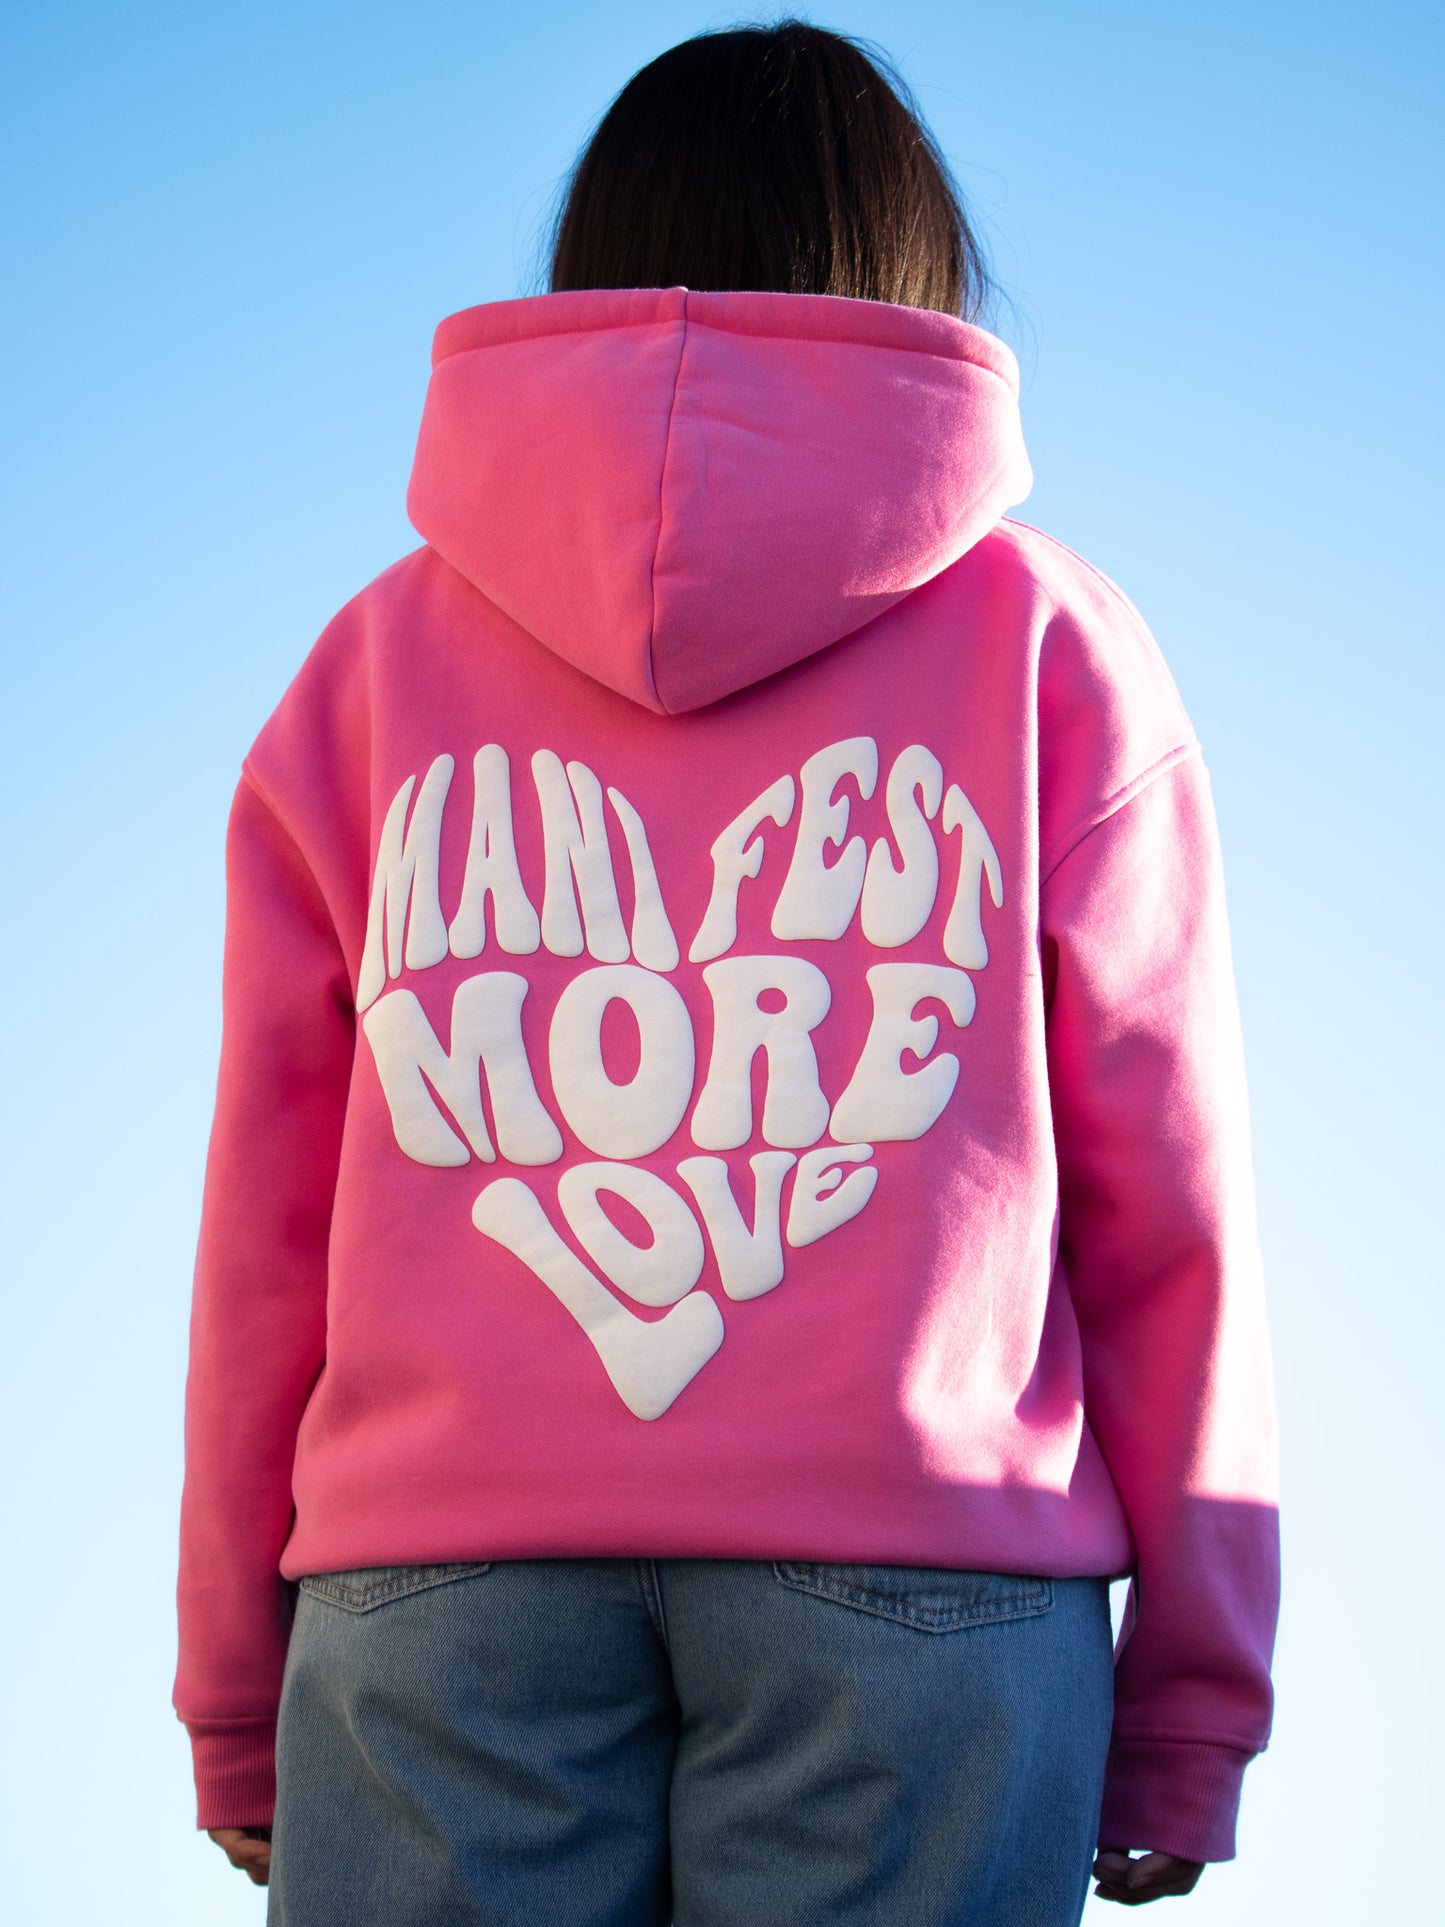 Manifest More Love Hoodie - Pink